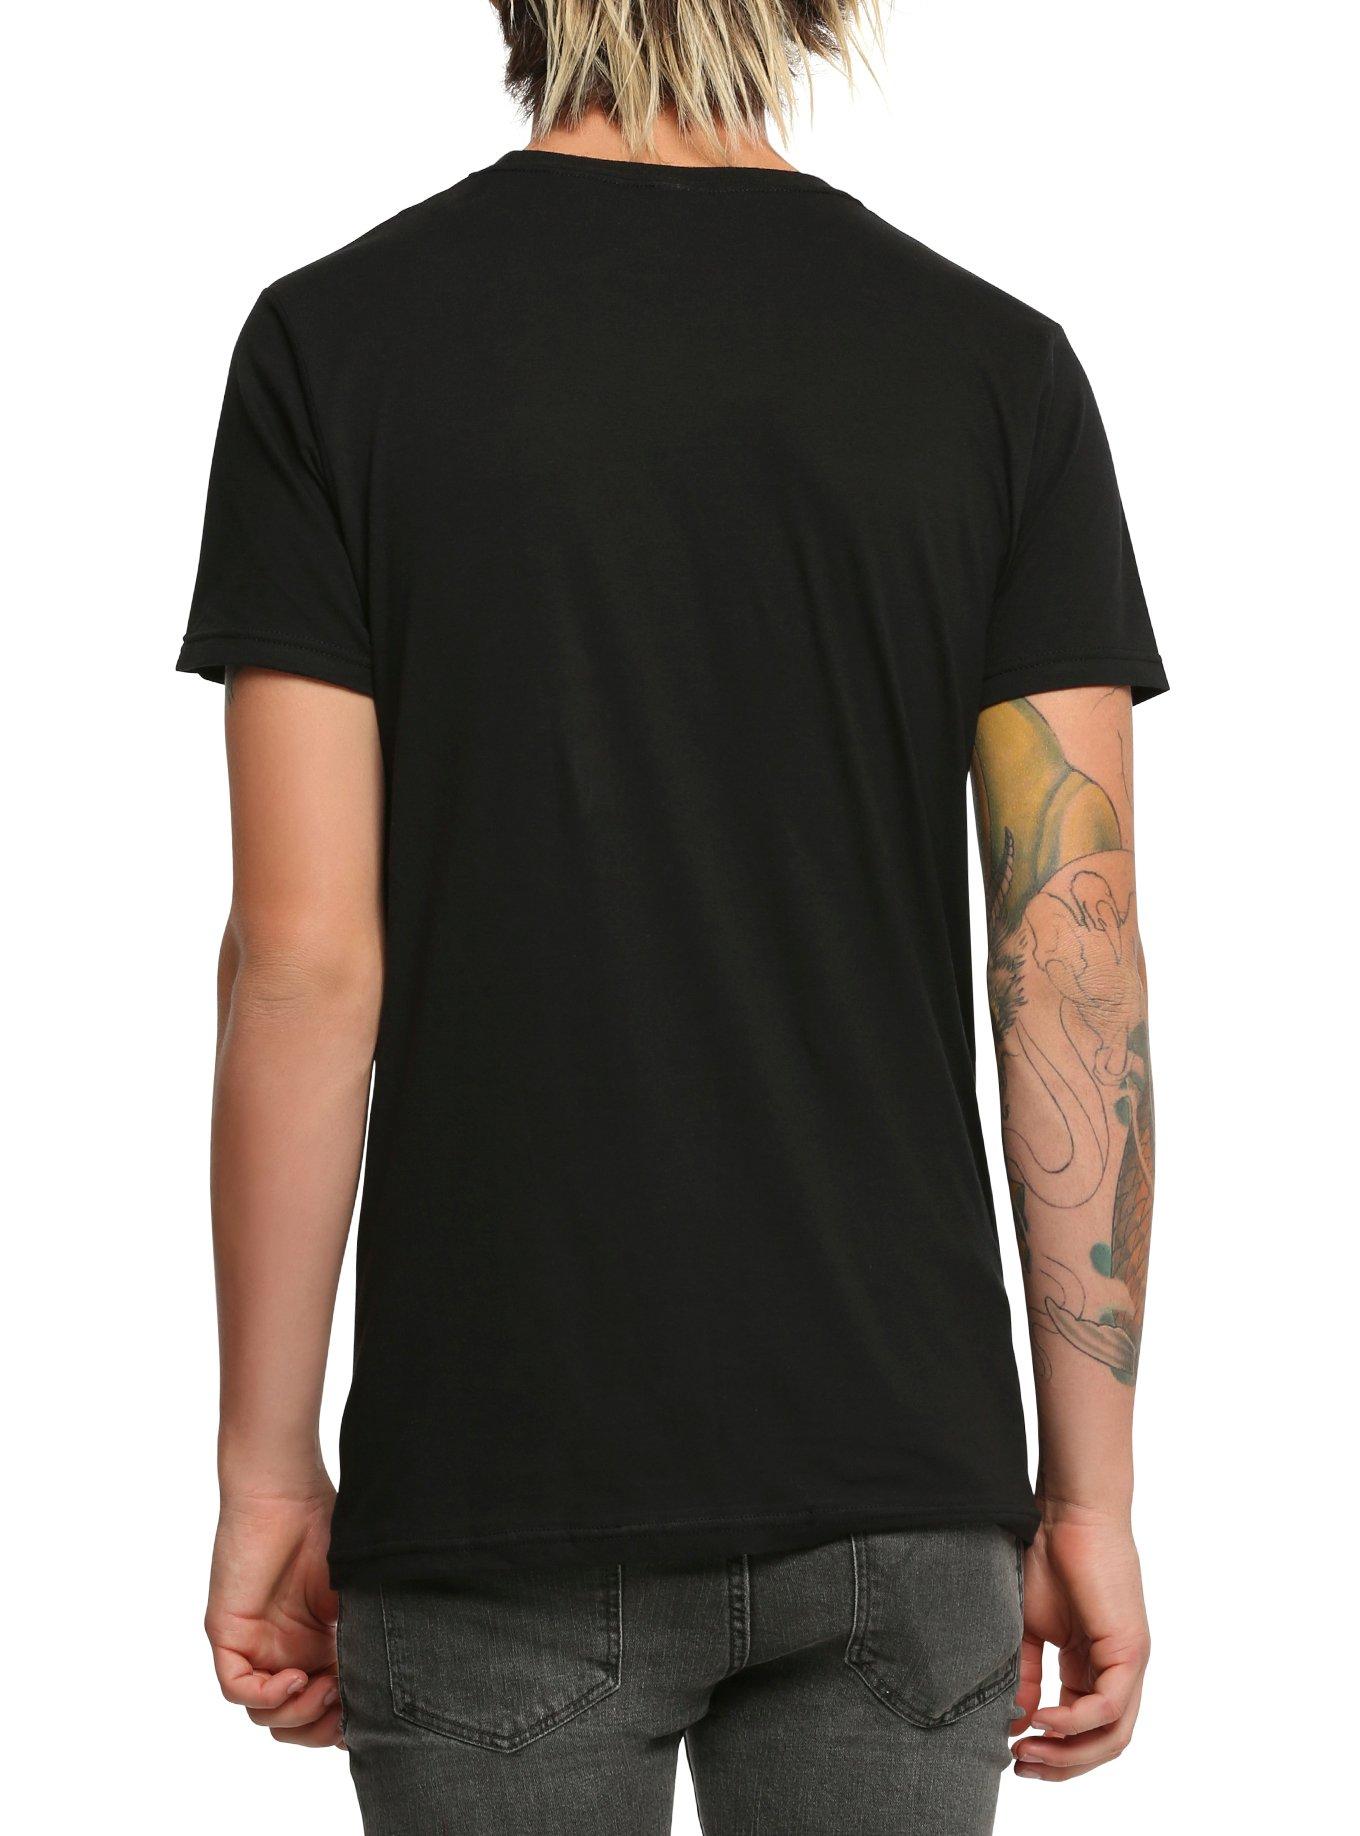 Linkin Park Fire Face T-Shirt, BLACK, alternate